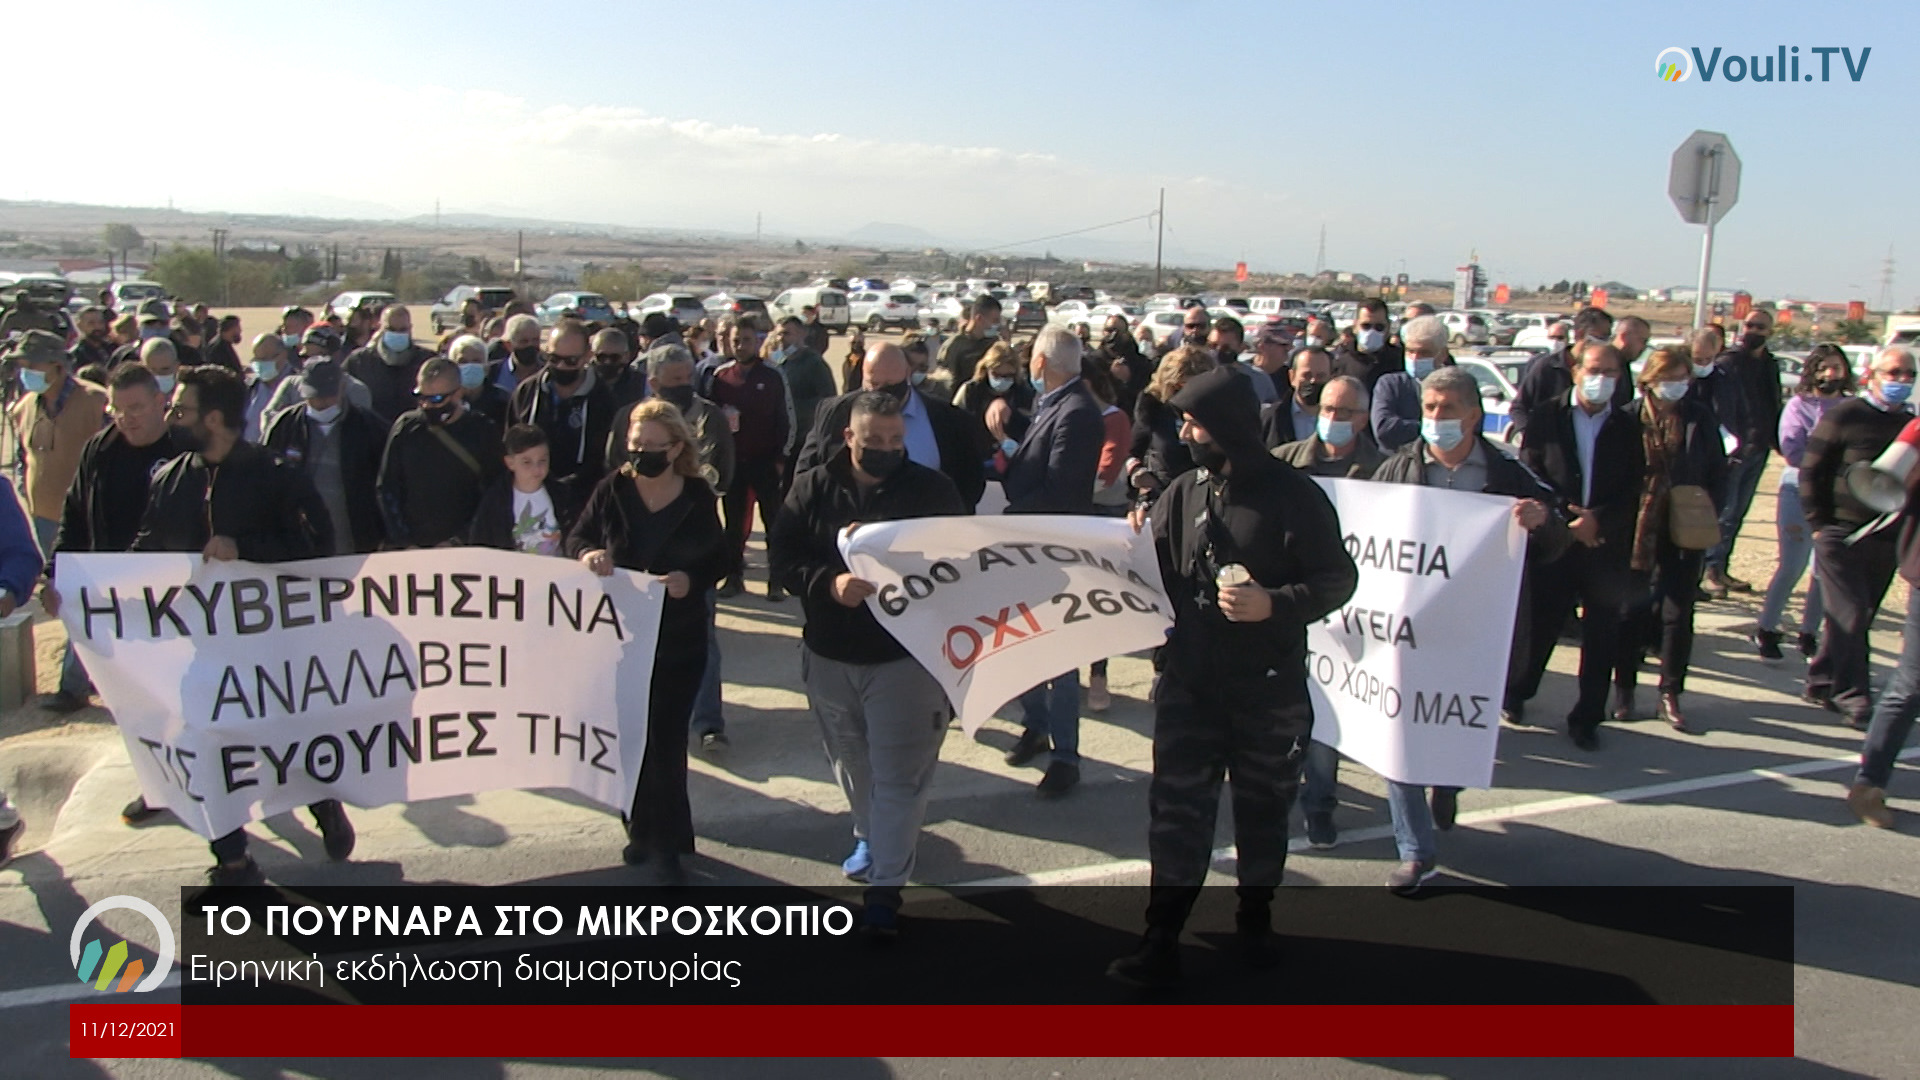 ΤΟ ΠΟΥΡΝΑΡΑ ΣΤΟ ΜΙΚΡΟΣΚΟΠΙΟ - Εκδήλωση διαμαρτυρίας 11/12/2021